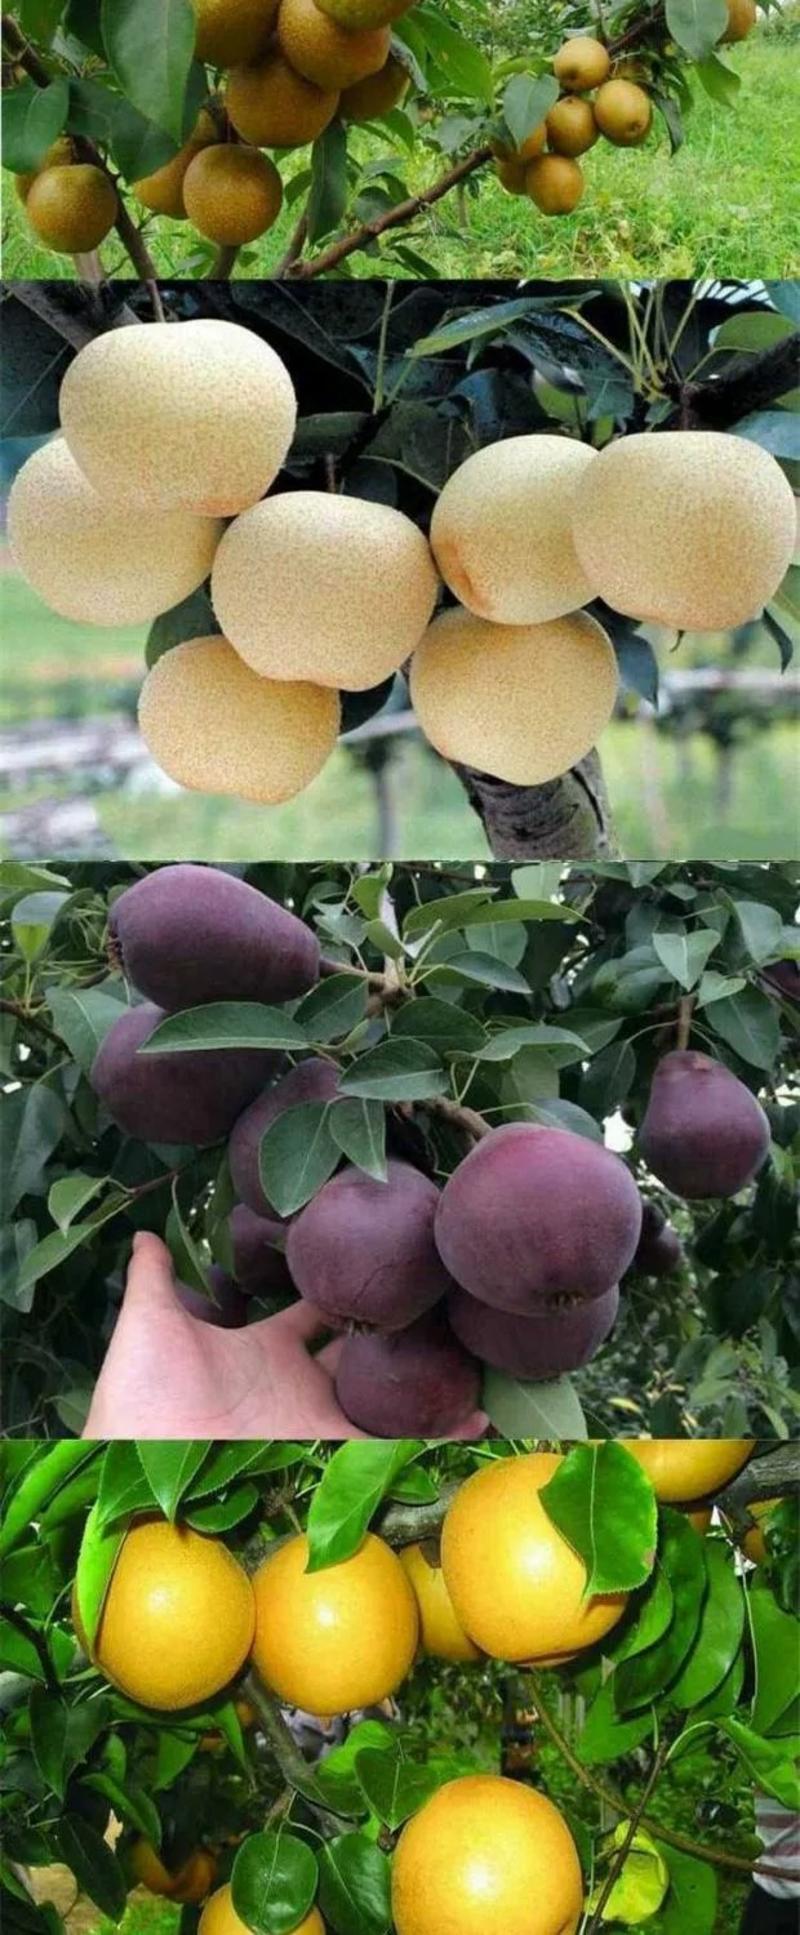 梨树苗。户外种植南北都可以种植。果子又甜。